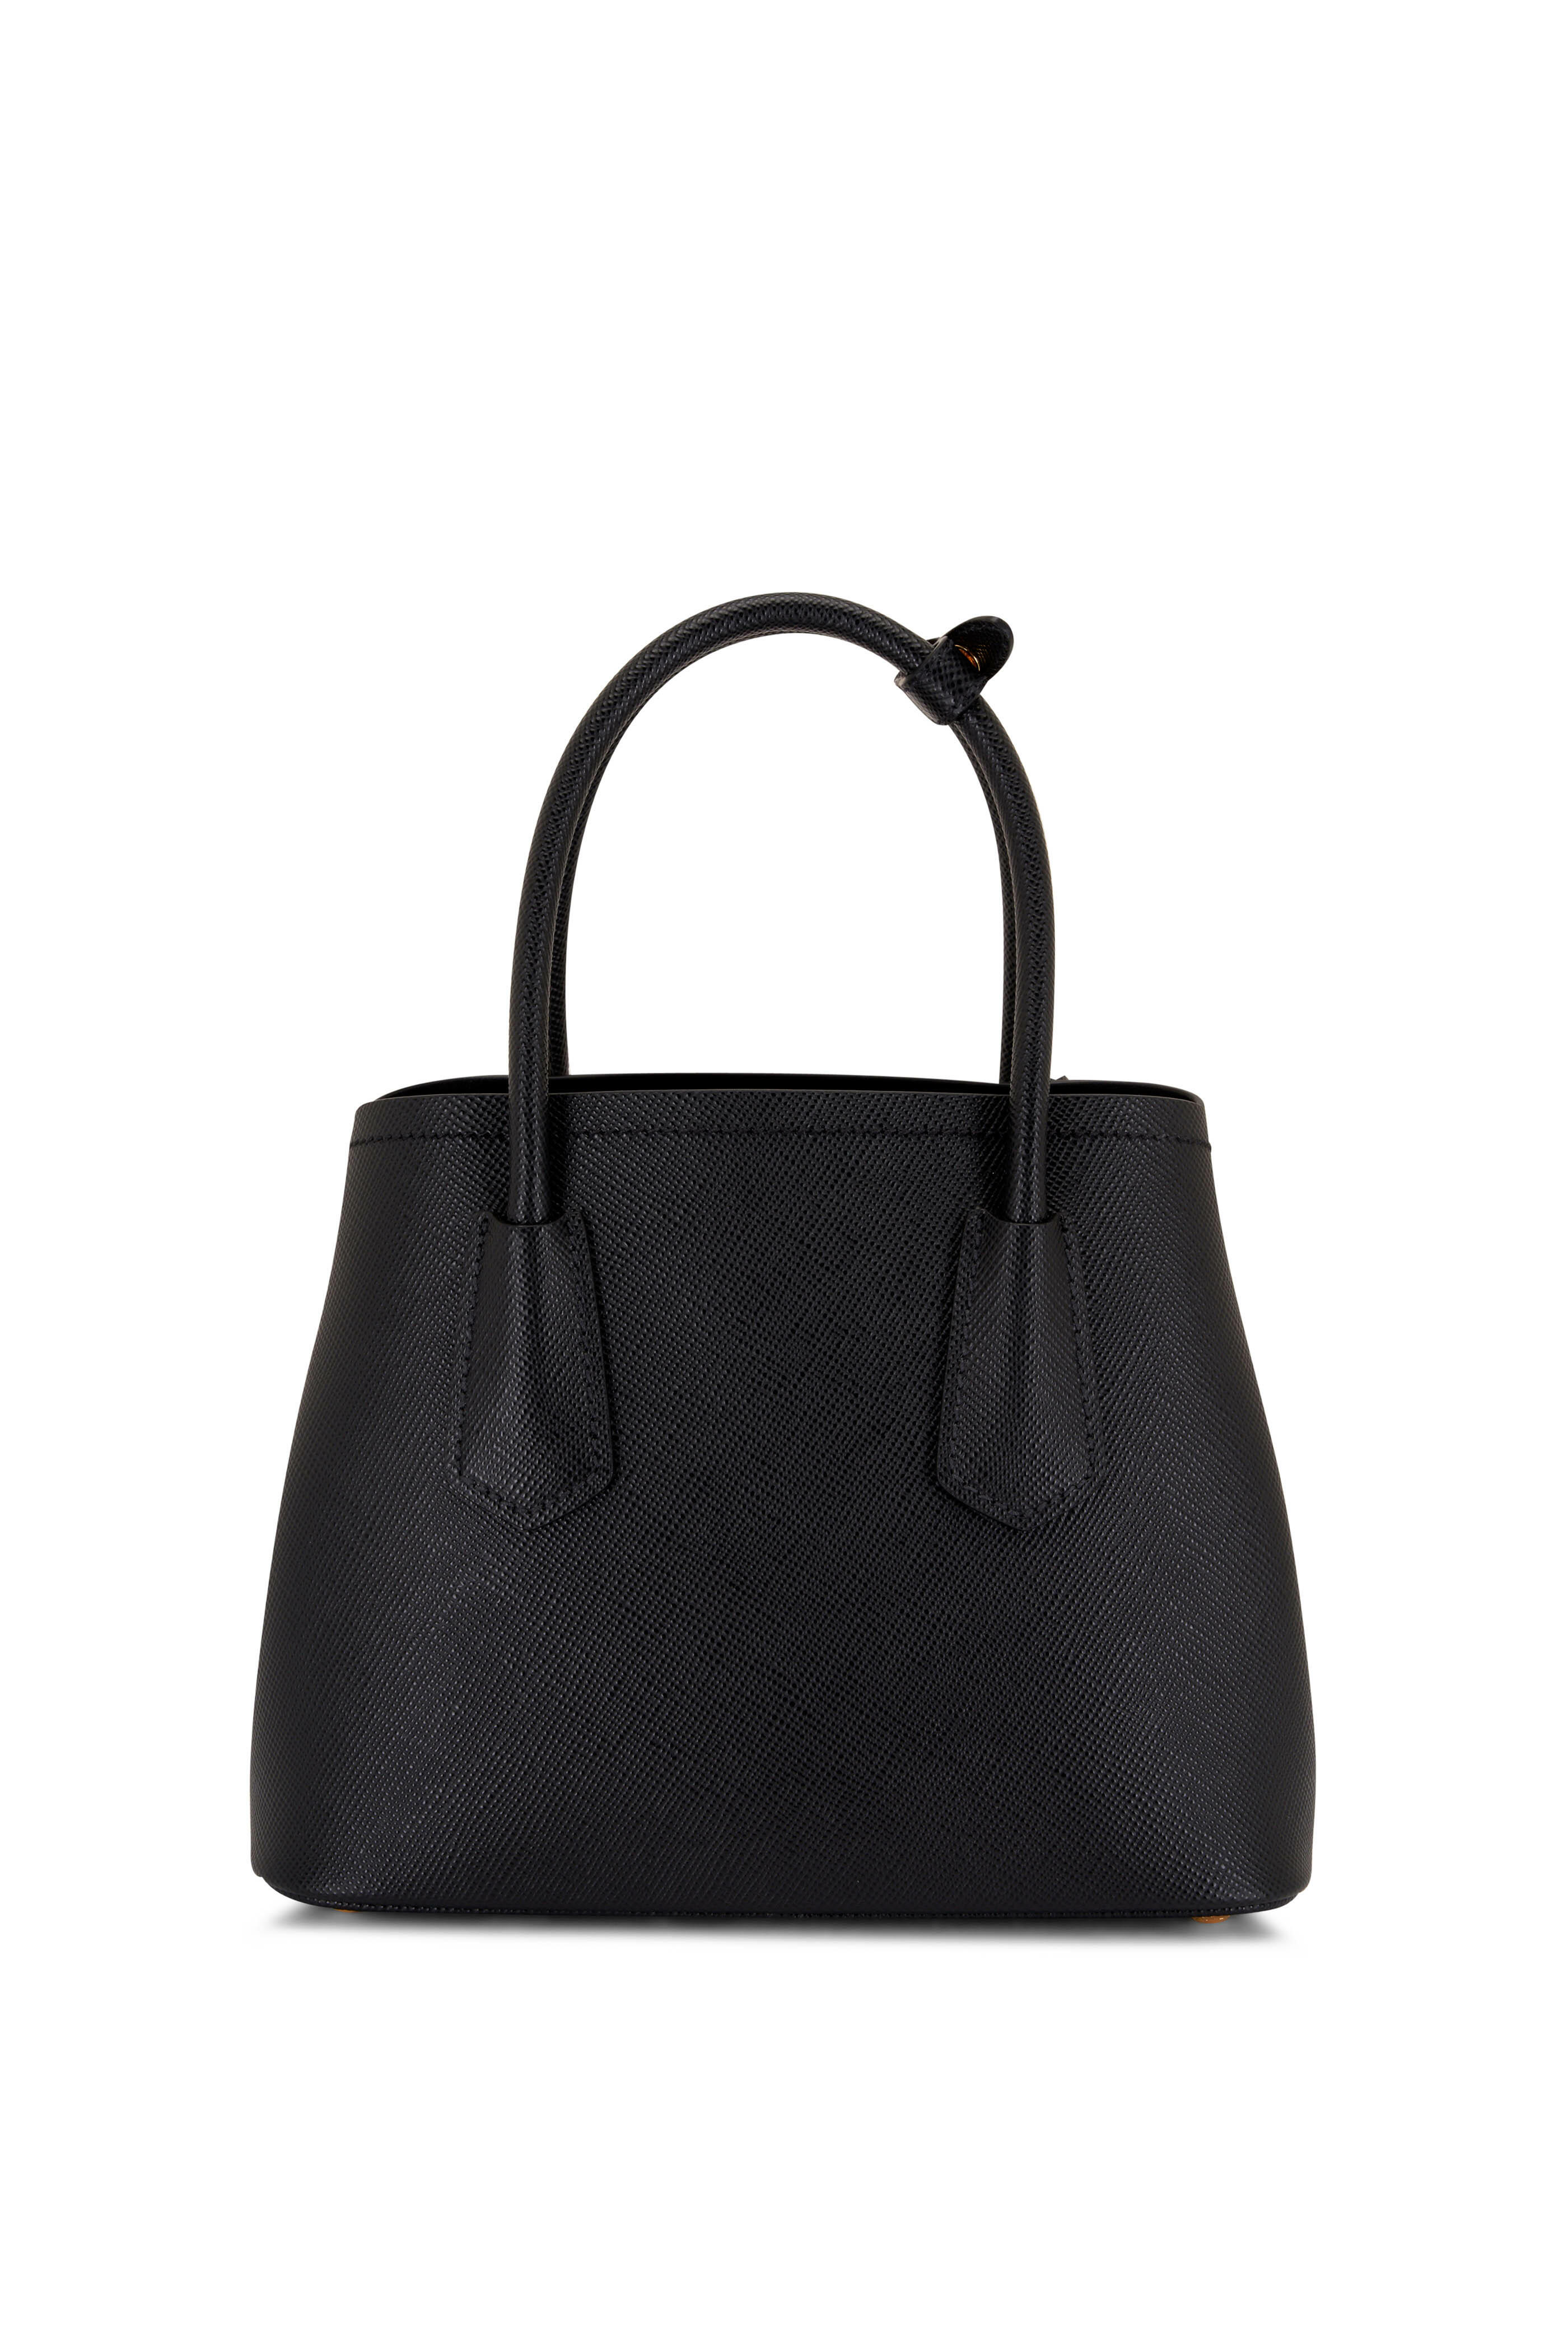 Prada Double Saffiano leather mini bag